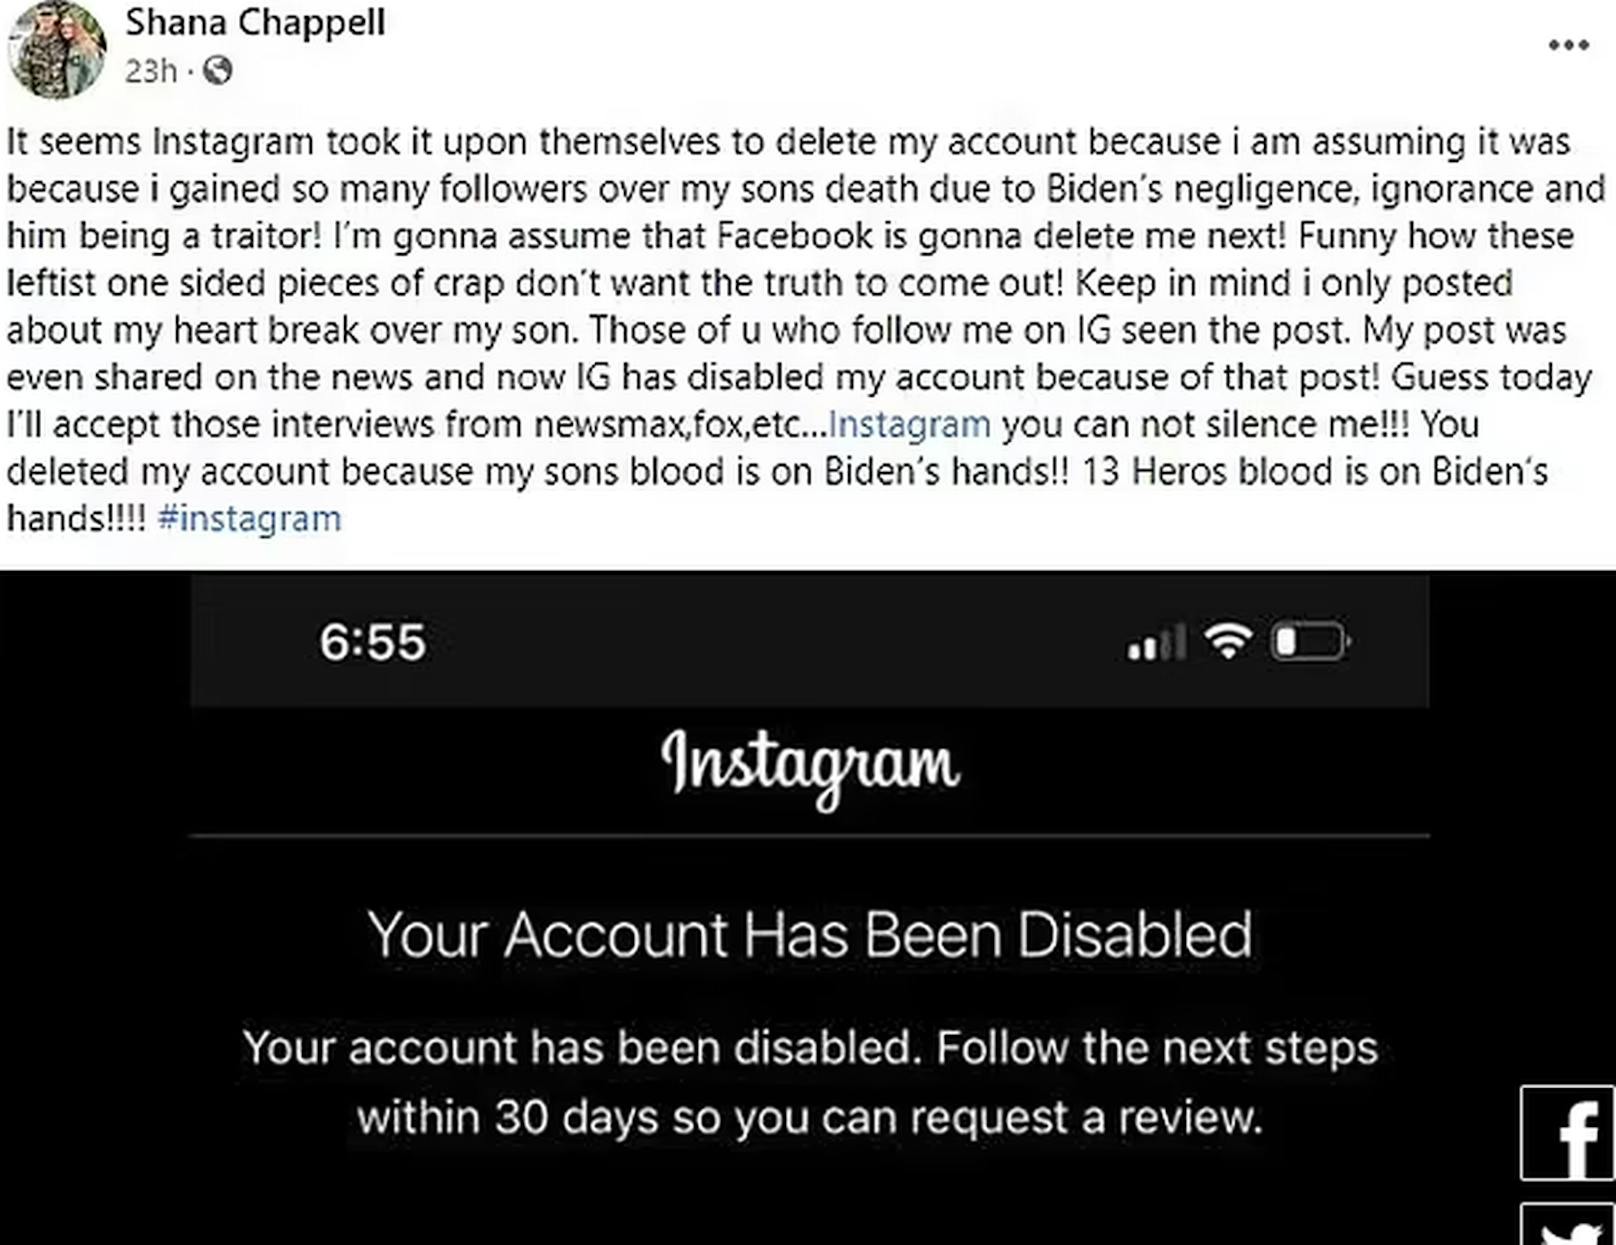 Ein Sprecher von Facebook, zu dessen Unternehmen Instagram gehört, erklärte, dass das Profil fälschlicherweise deaktiviert wurde.